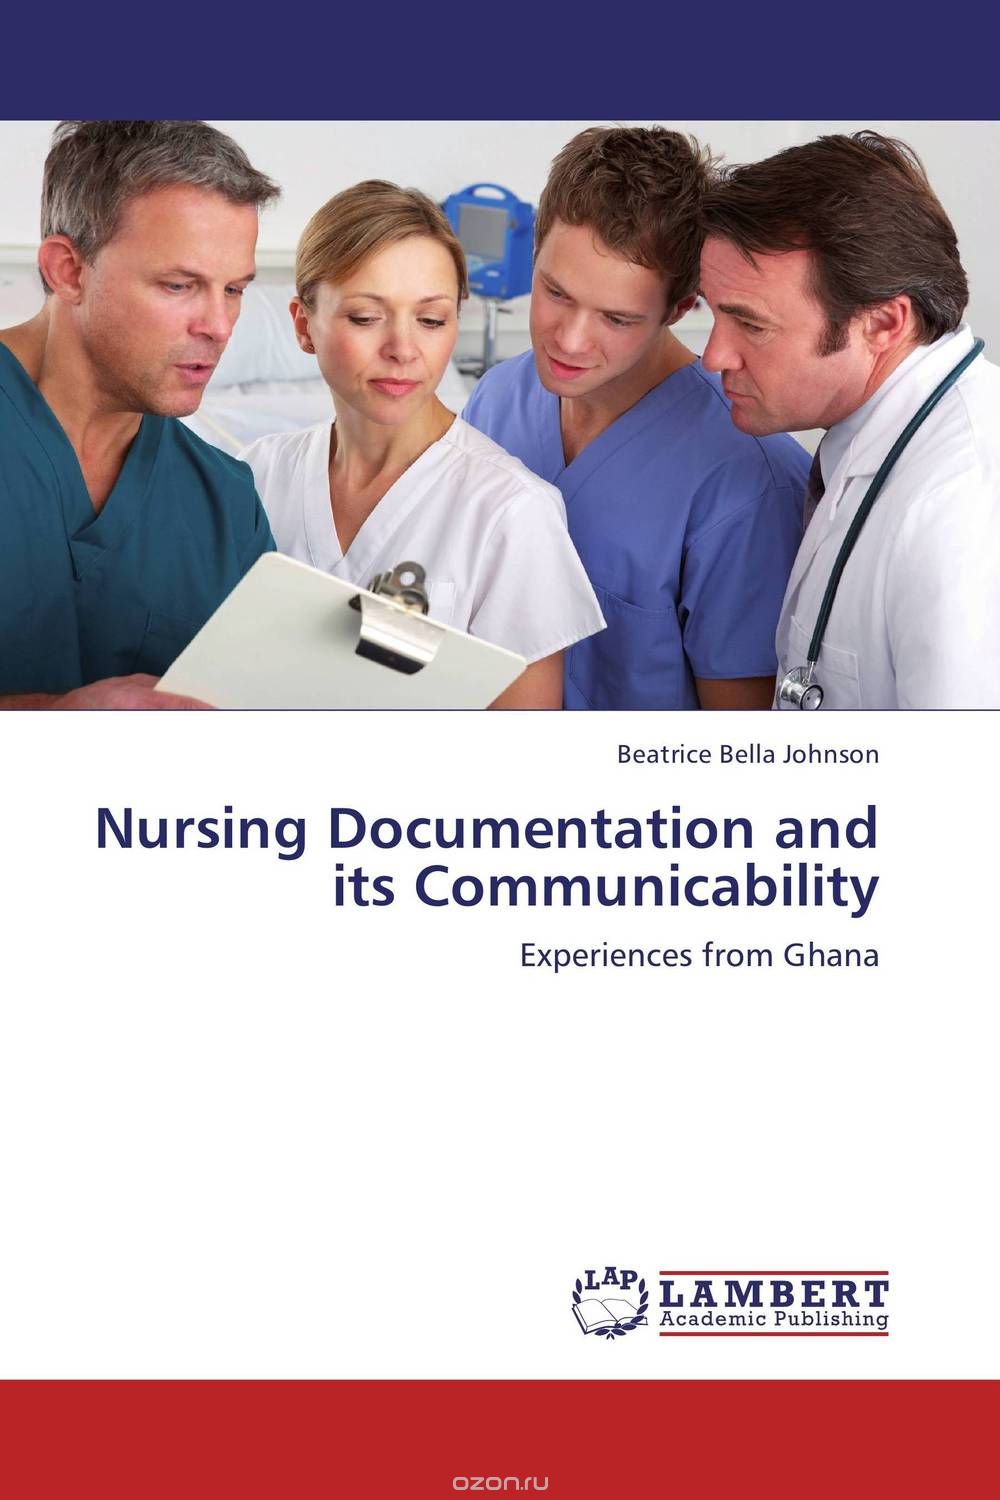 Скачать книгу "Nursing Documentation and its Communicability"